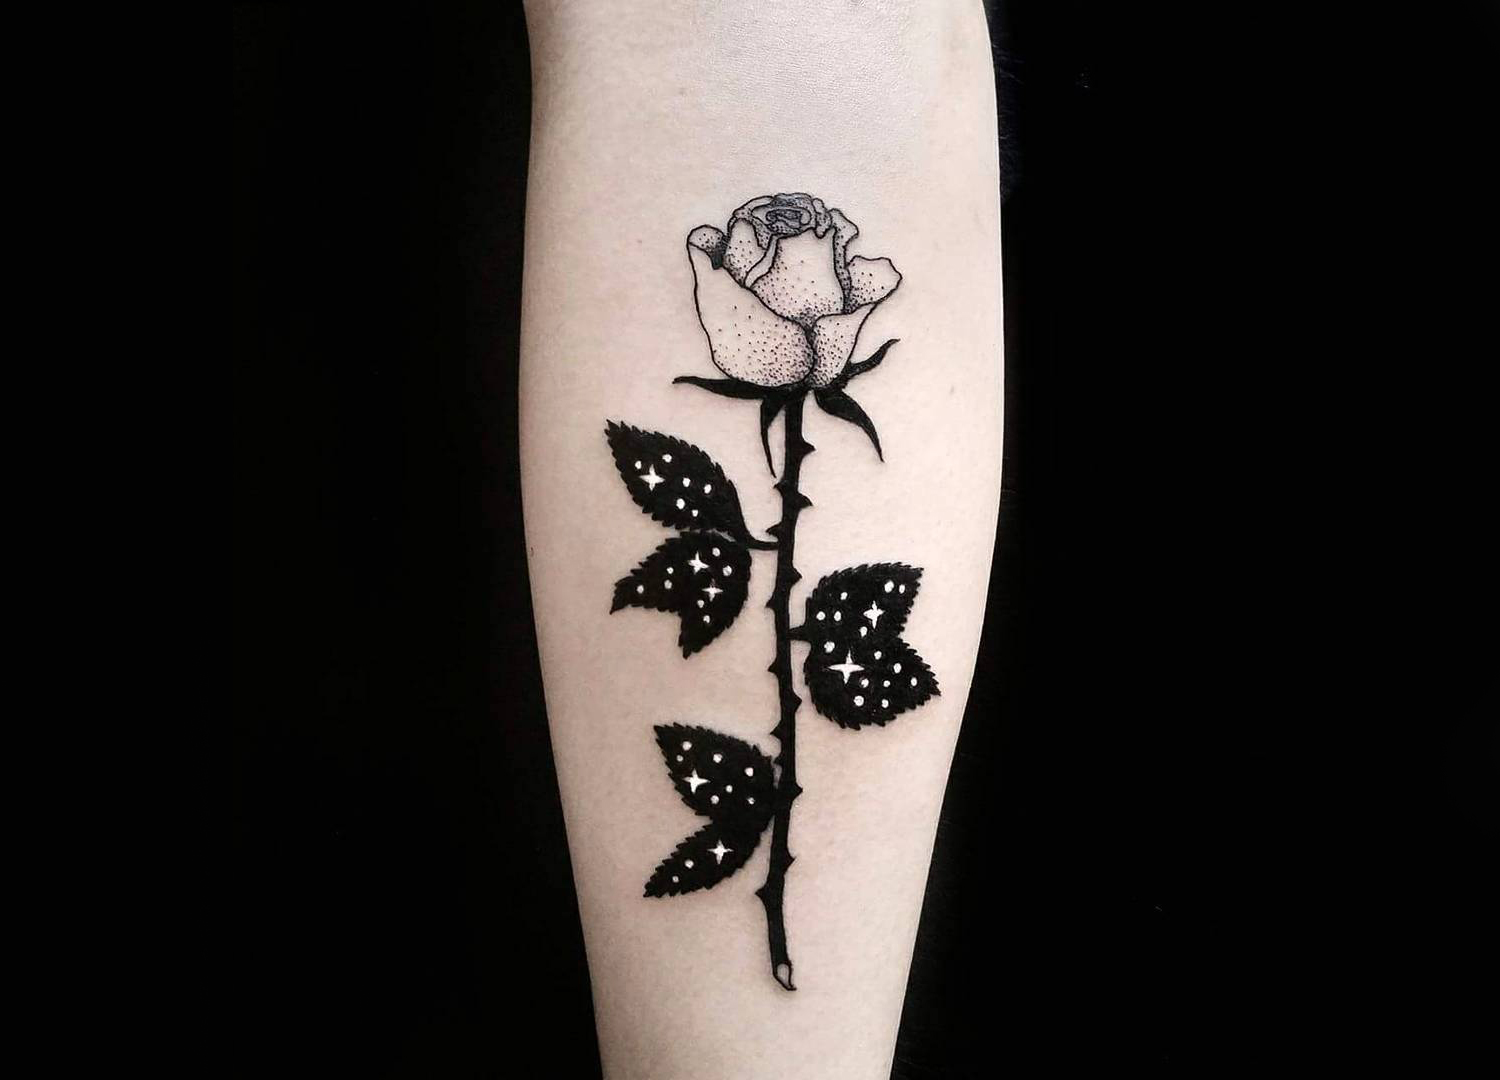 Flower tattoo on arm